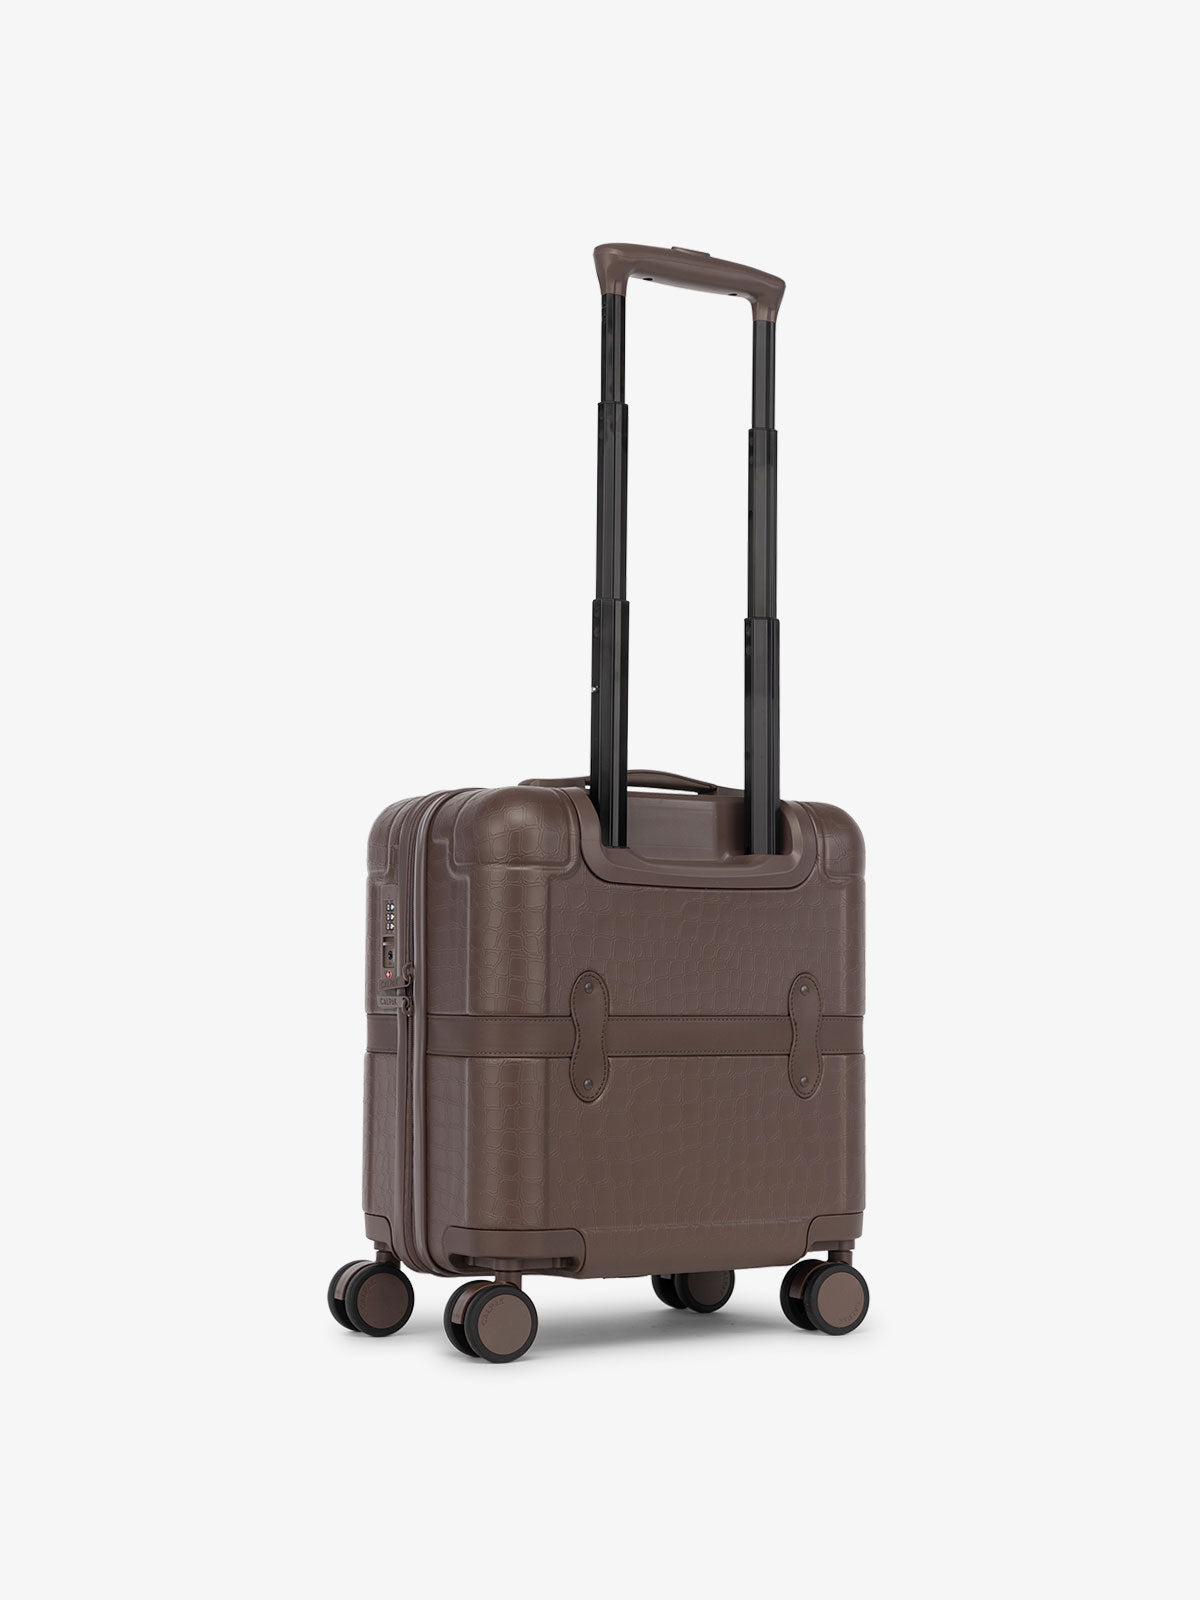 Trolleys for Travel  Goyard luggage, Handbag care, Travel chic